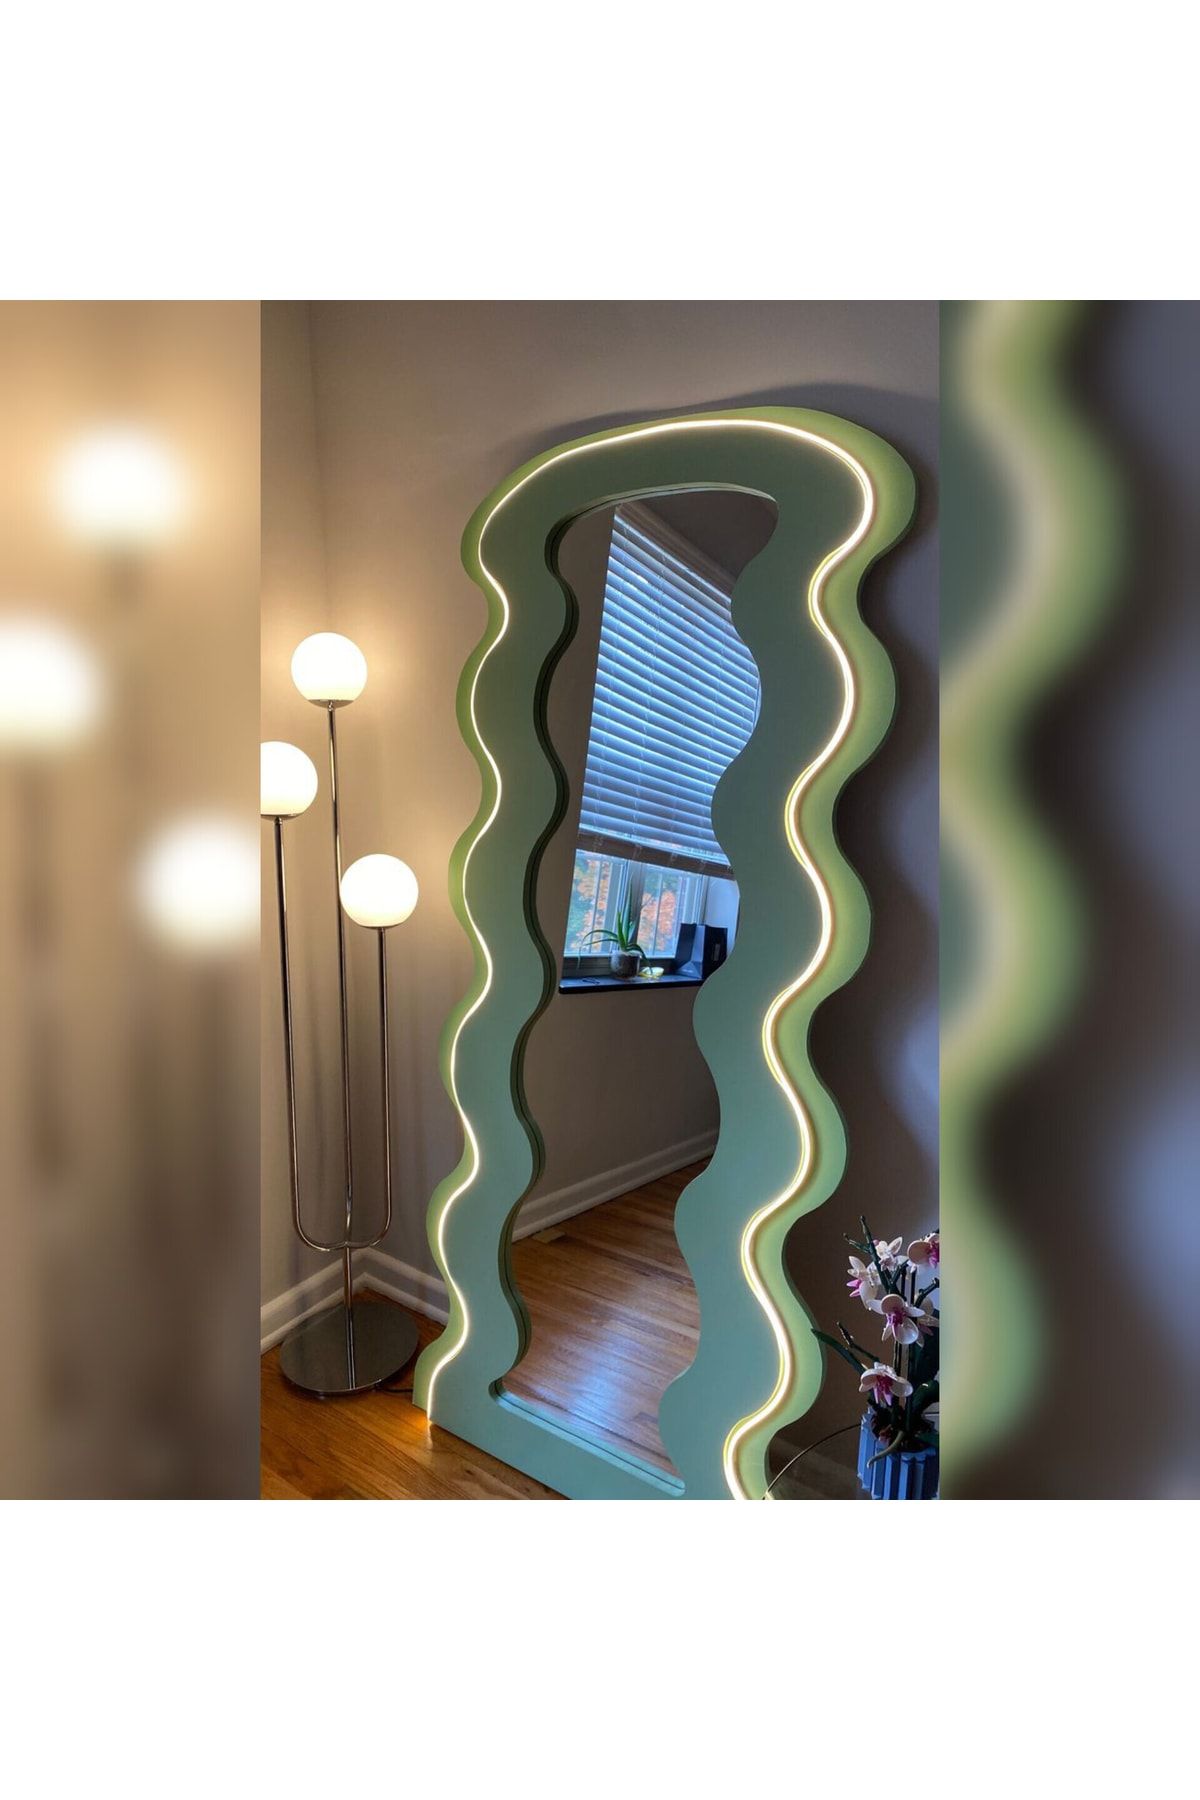 büga mimarlık üretim Lüx Renkli Boy Aynası